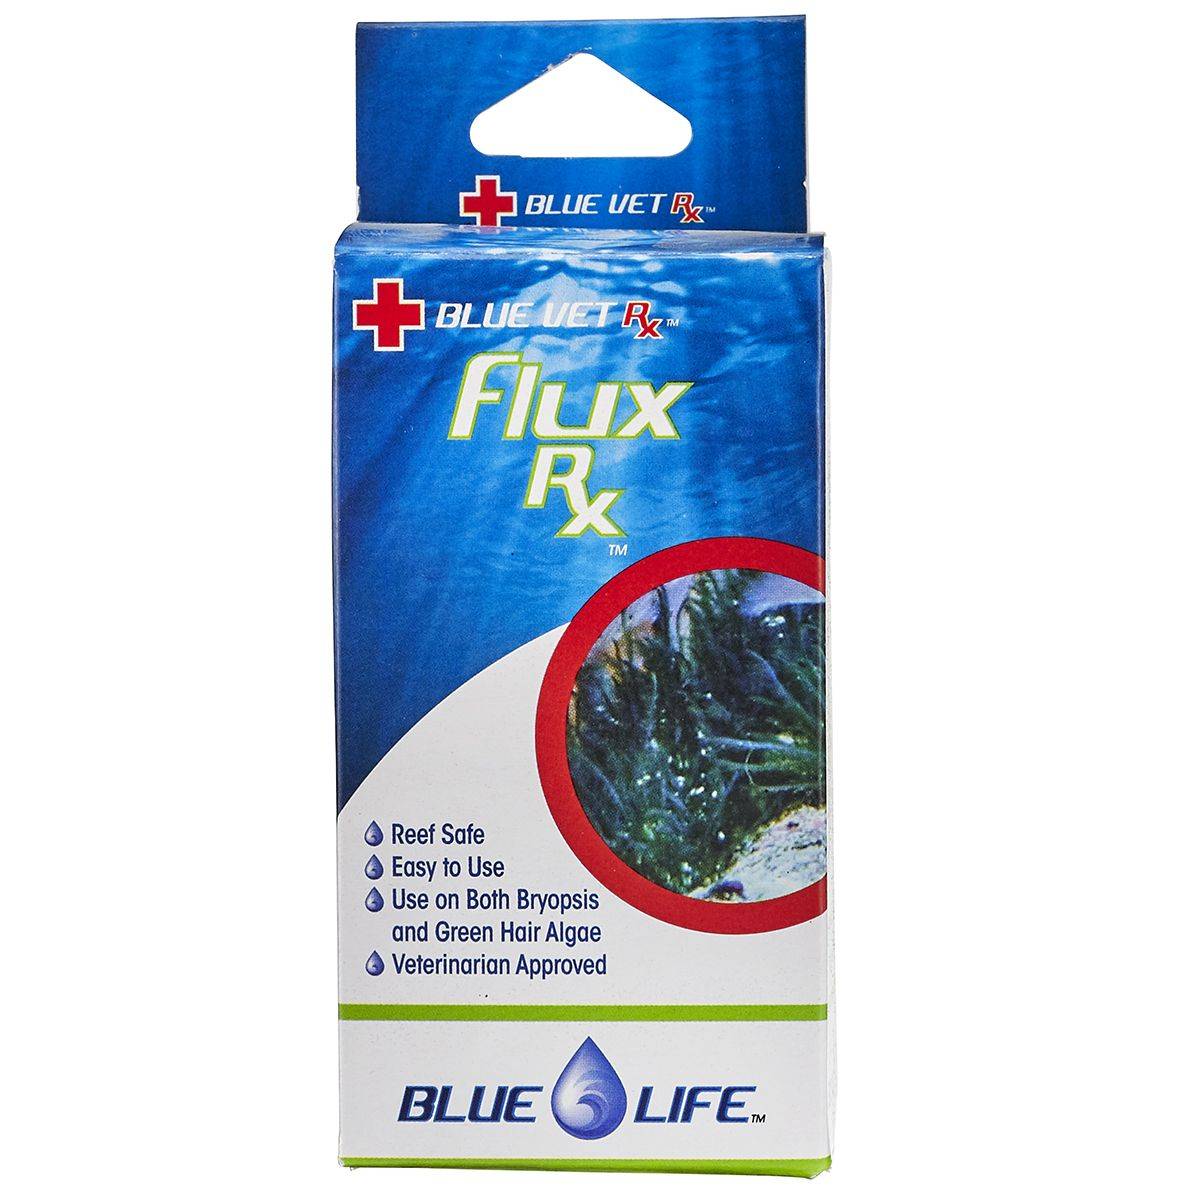 Blue Life USA Flux Rx (Fluconazole) Aquarium Treatment - Blue Life USA